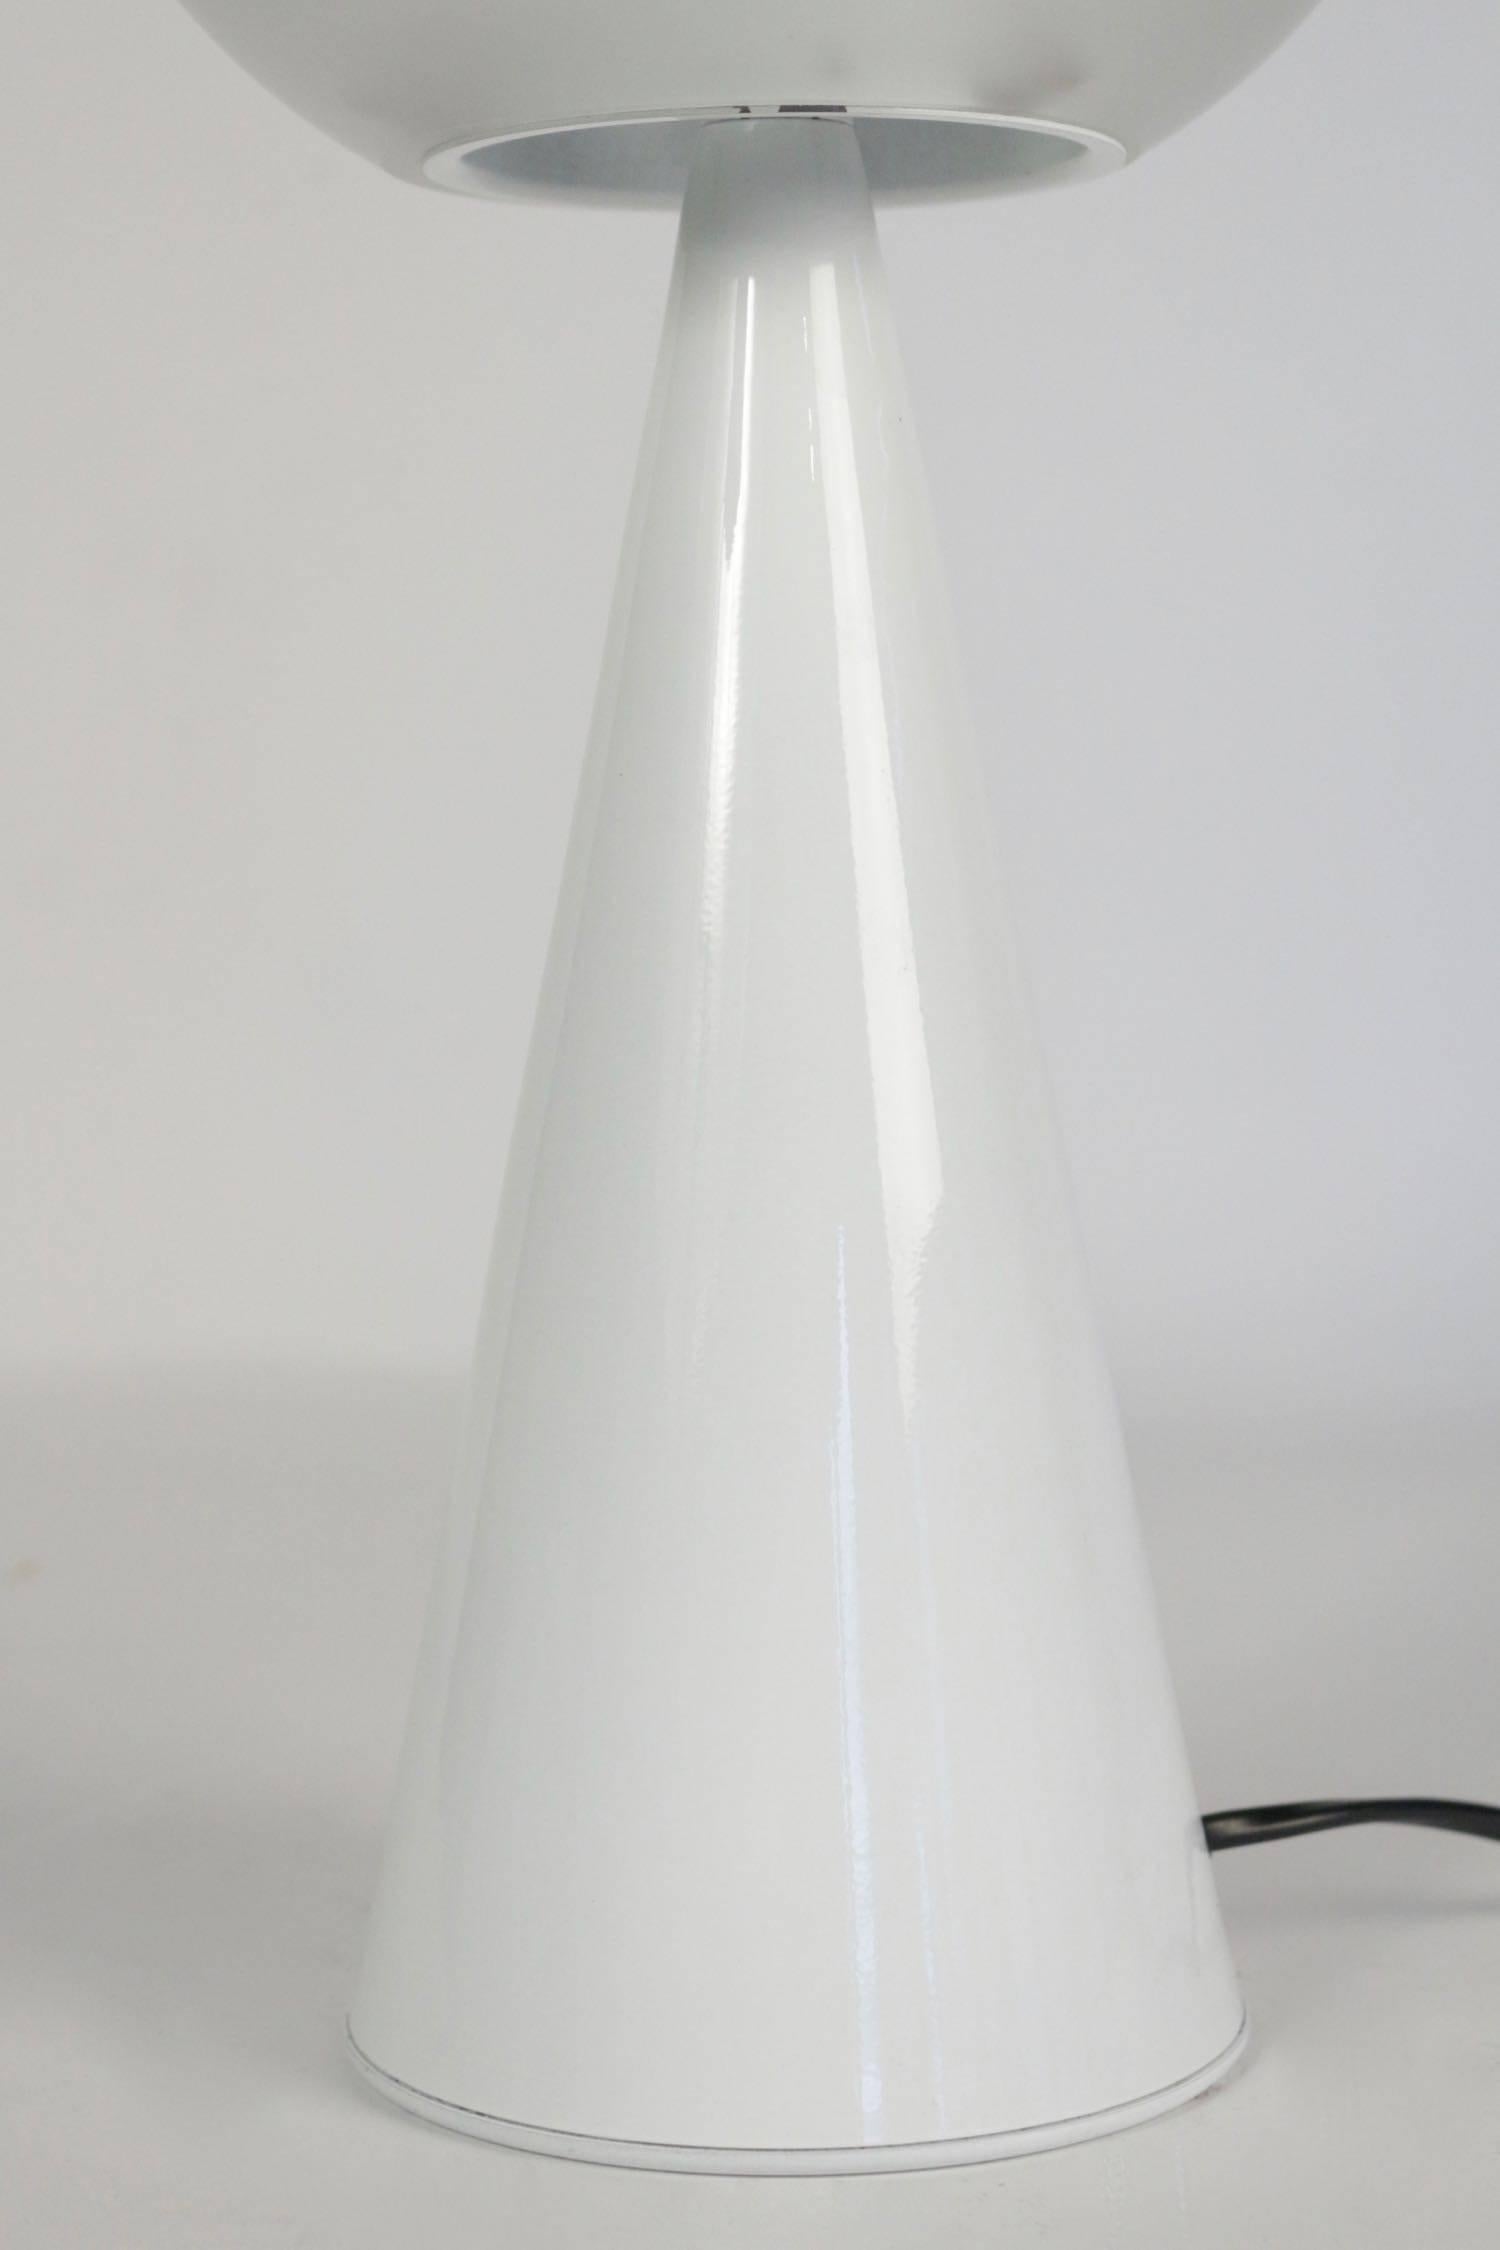 Italian 1960 Lamp Designed by Gio Ponti Model No. 2474 for Fontana Arte, circa 1960